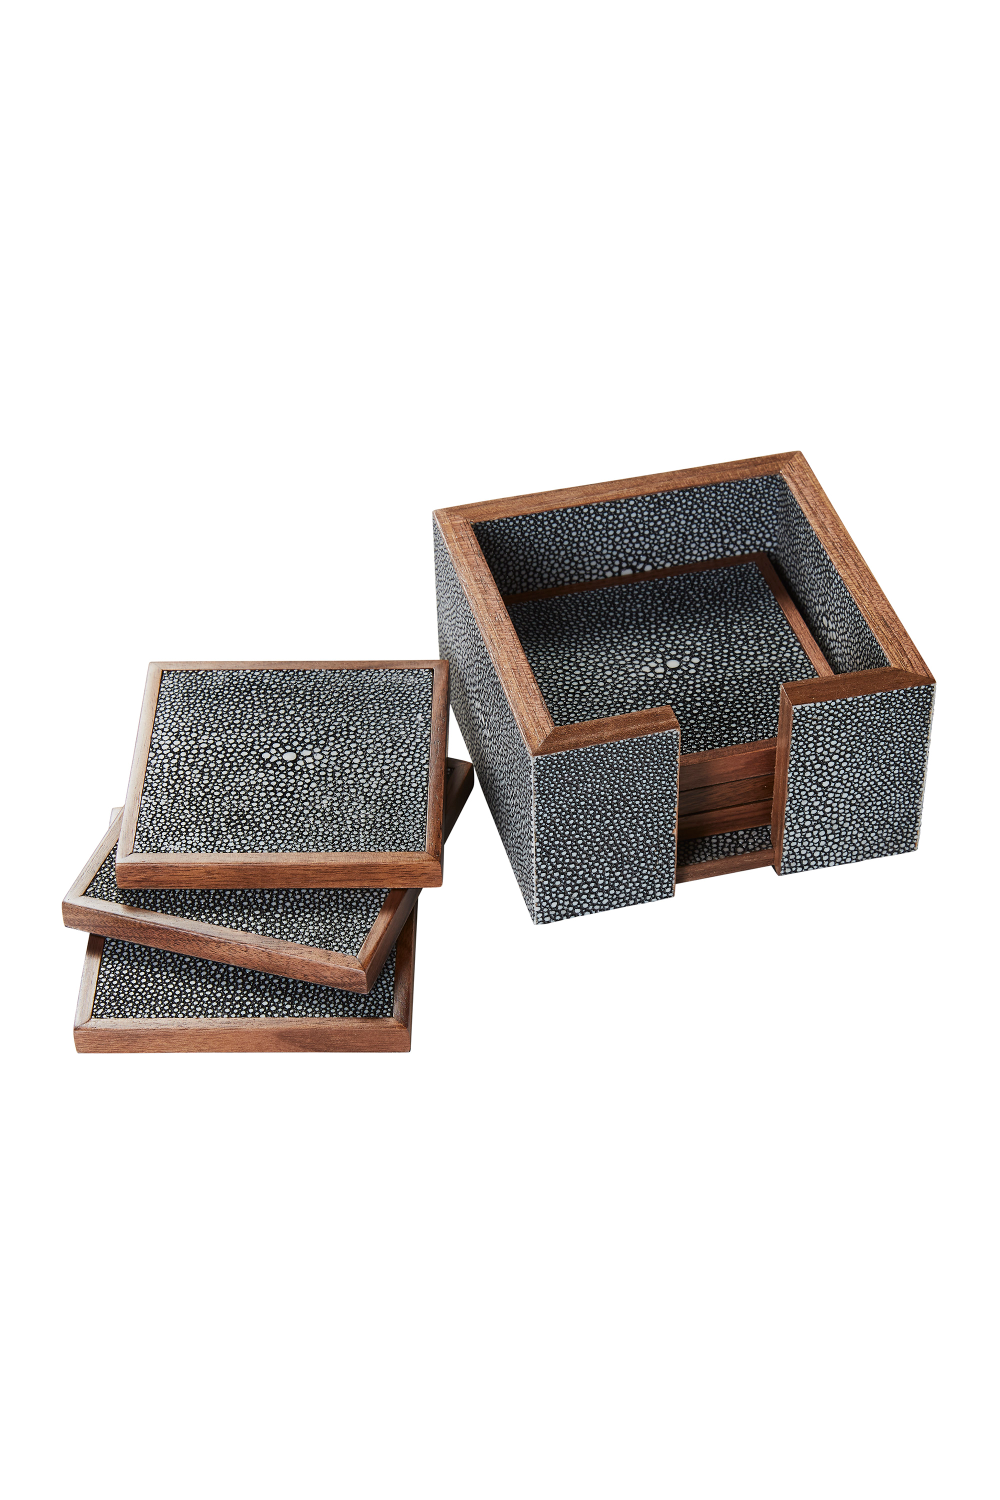 Gray Shagreen Coasters with Box (6) | Andrew Martin Lexi | OROA